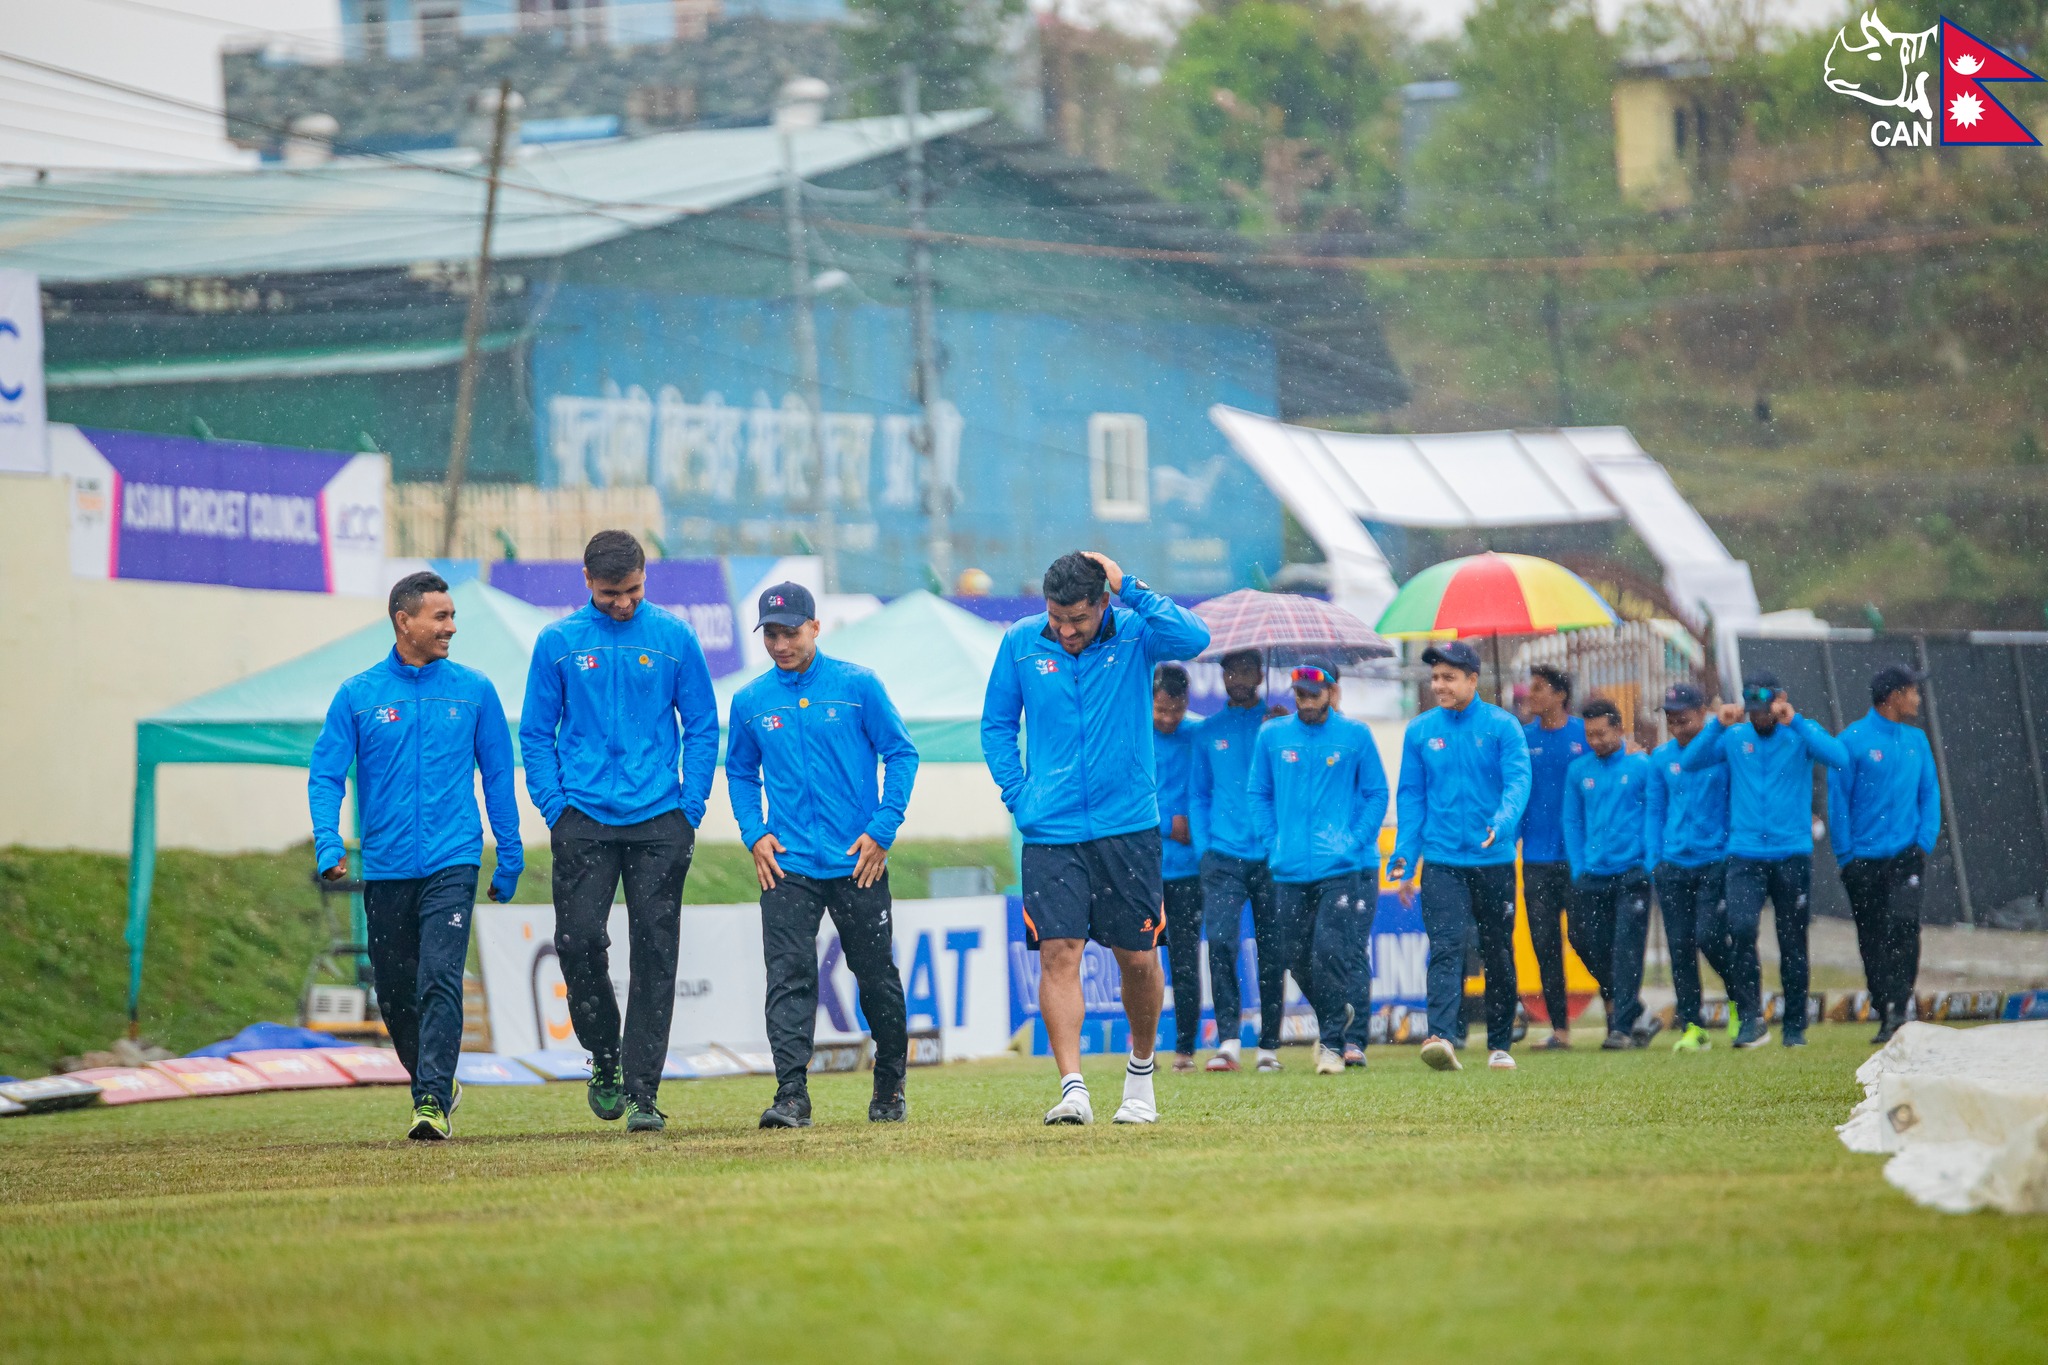 वर्षाका कारण खेल रद्द, अंकका आधारमा नेपाल सेमिफाइनलमा